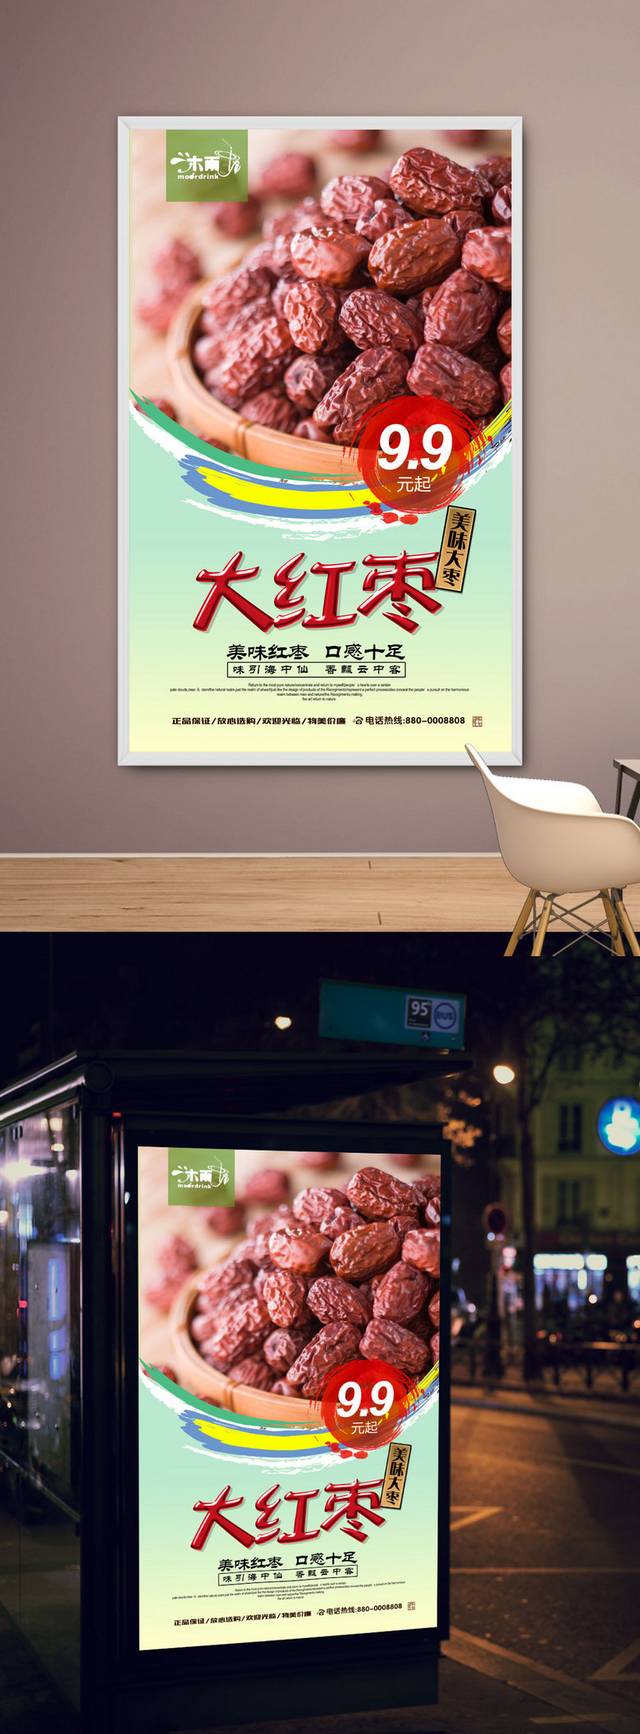 红枣促销宣传海报设计